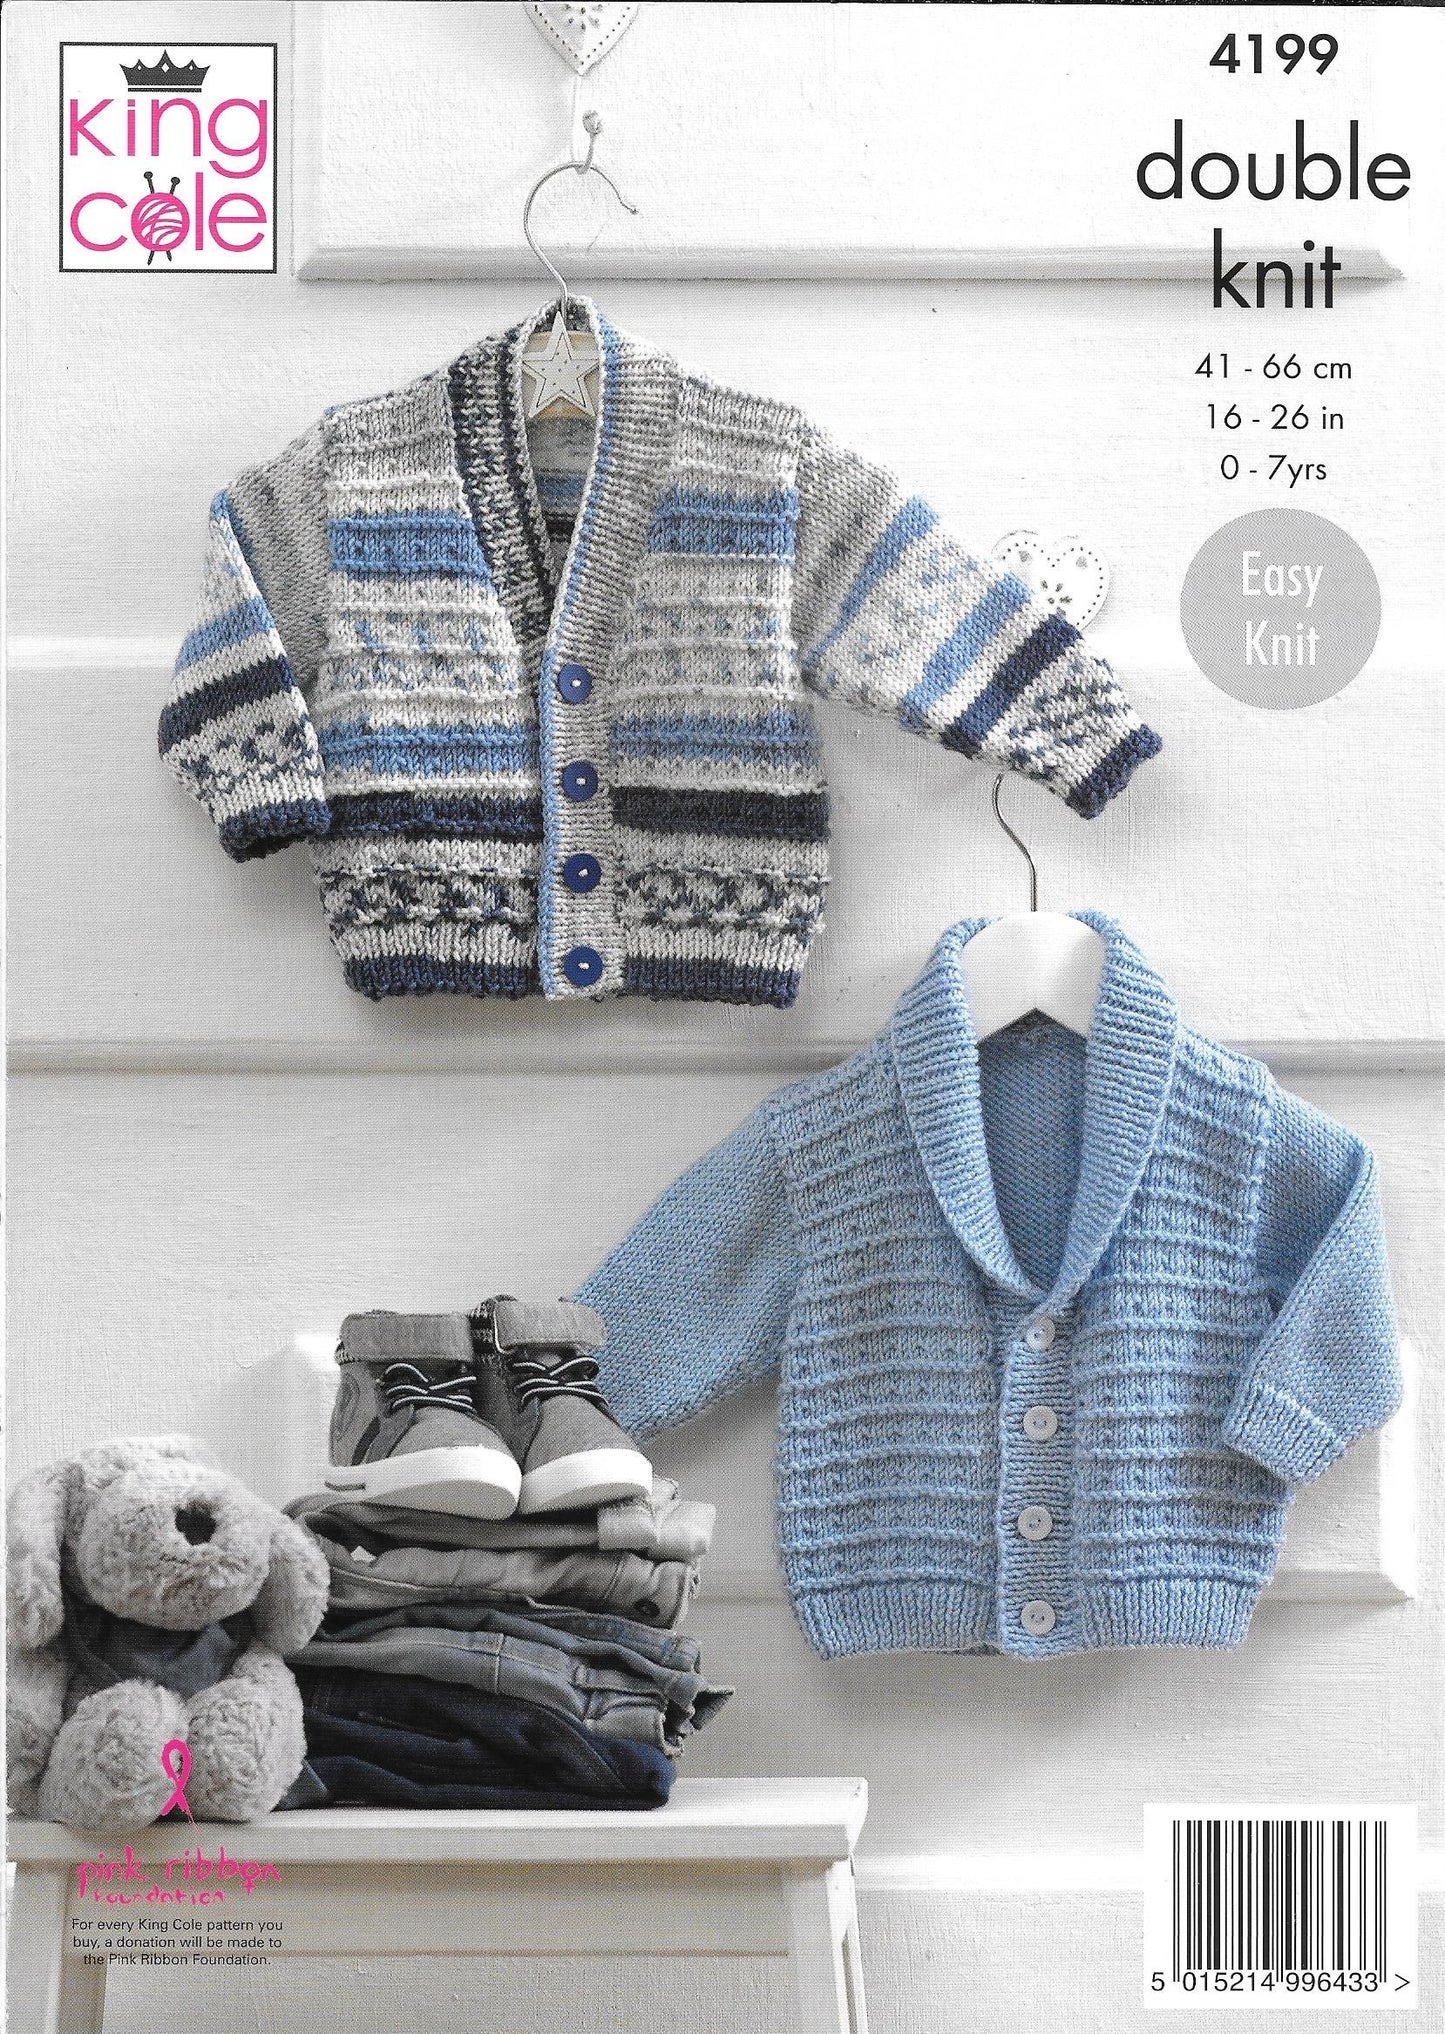 4199 King Cole Cherished dk baby, child shawl collared jacket, v-neck jacket and waistcoat knitting pattern